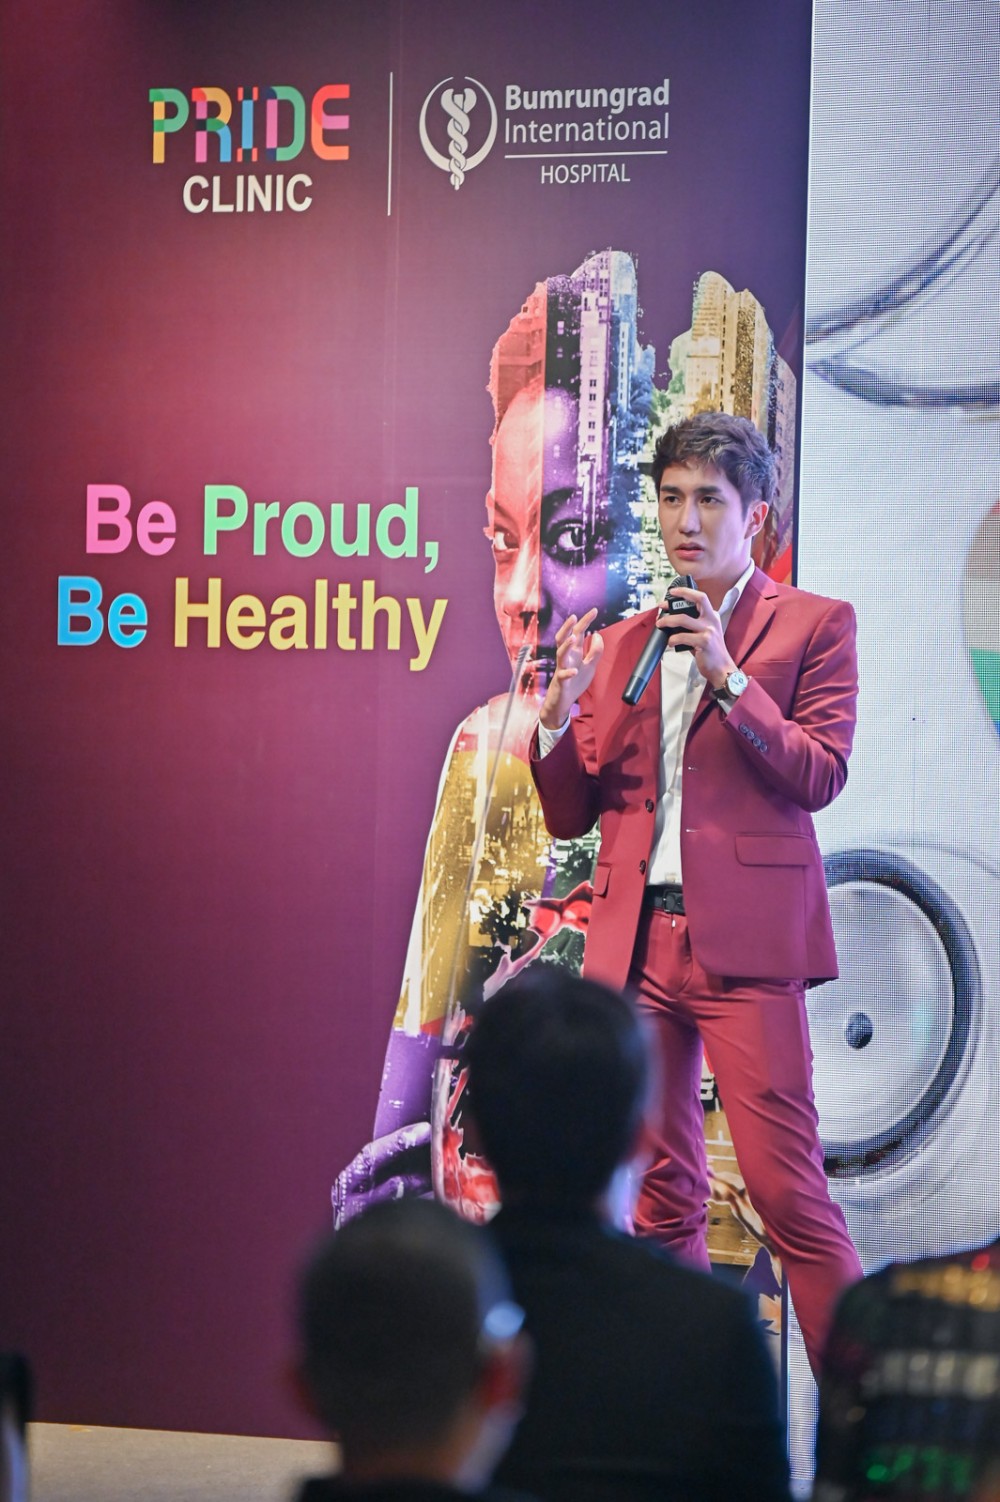 Pride Clinic Talk, LGBTQ+, Waldorf Astoria Bangkok, สุขภาพทางเพศ, ครอบคลุมทุกมิติ, บุคคลหลากหลายทางเพศ, โรงพยาบาลบำรุงราษฎร์, มาตรฐานความปลอดภัย